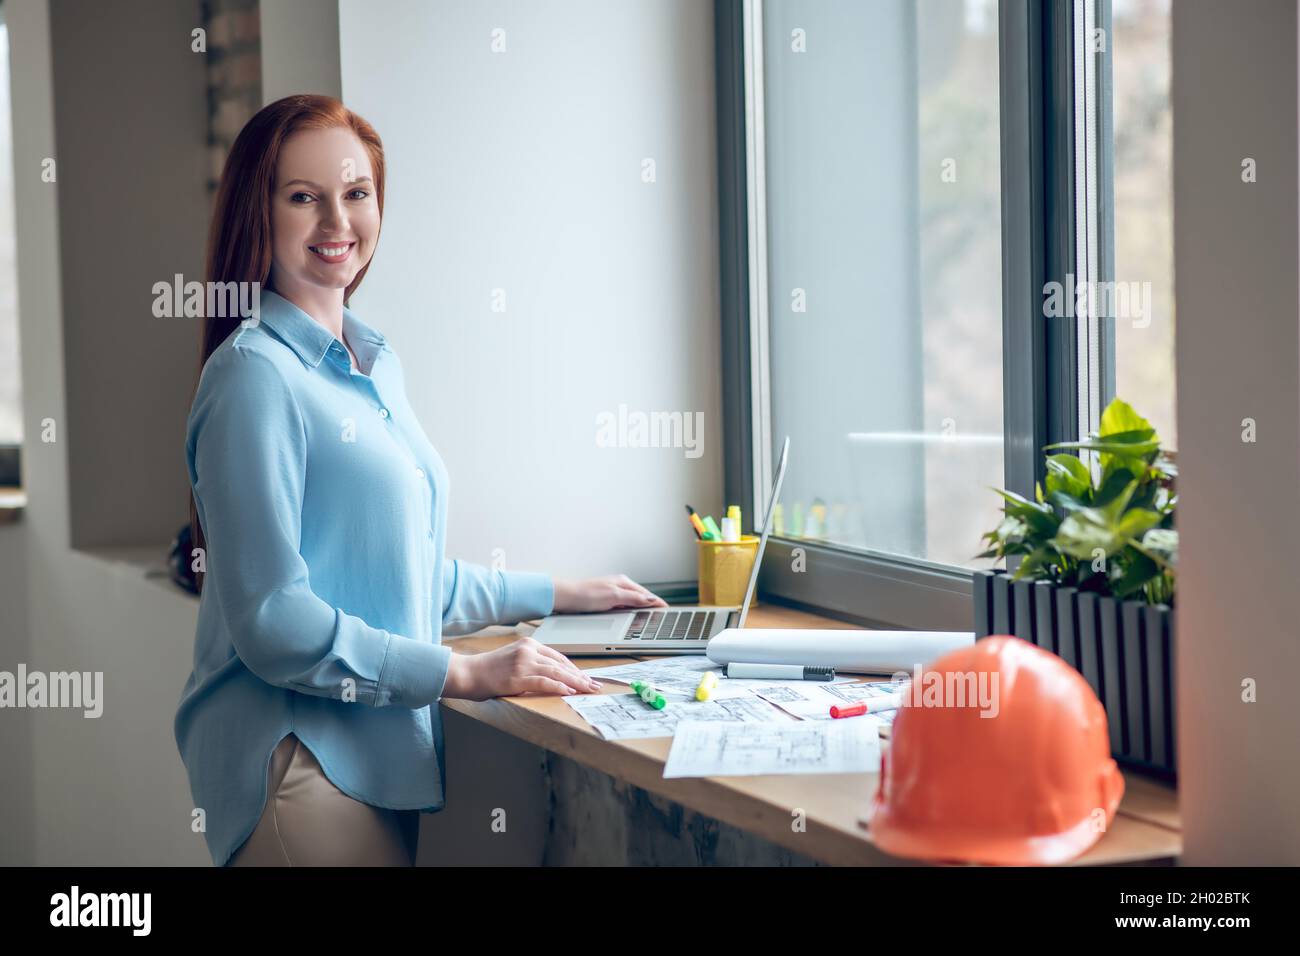 Femme souriante travaillant avec des schémas sur le rebord de la fenêtre Banque D'Images